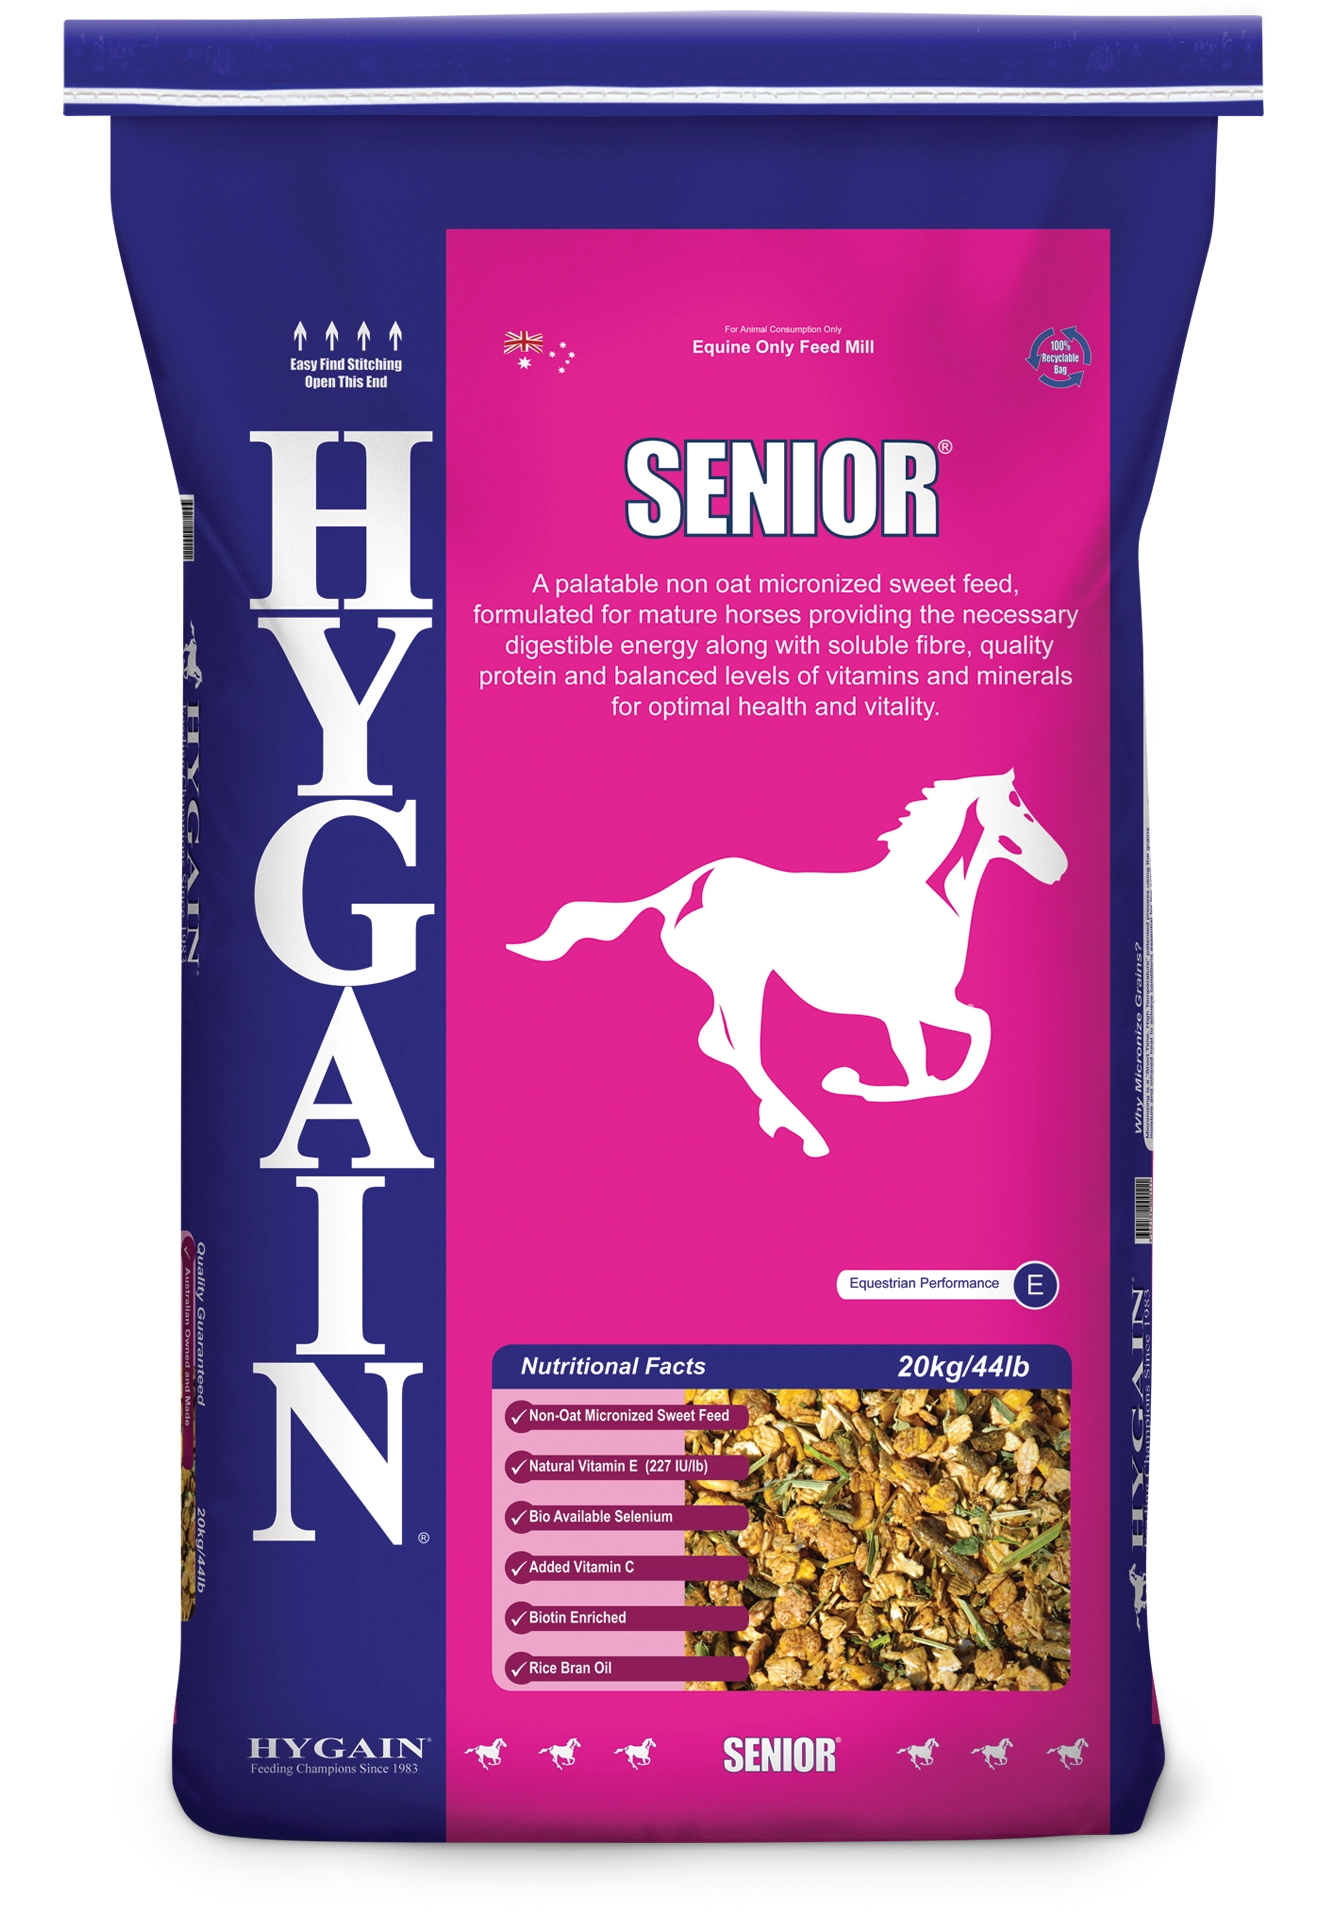 Hygain Senior bag